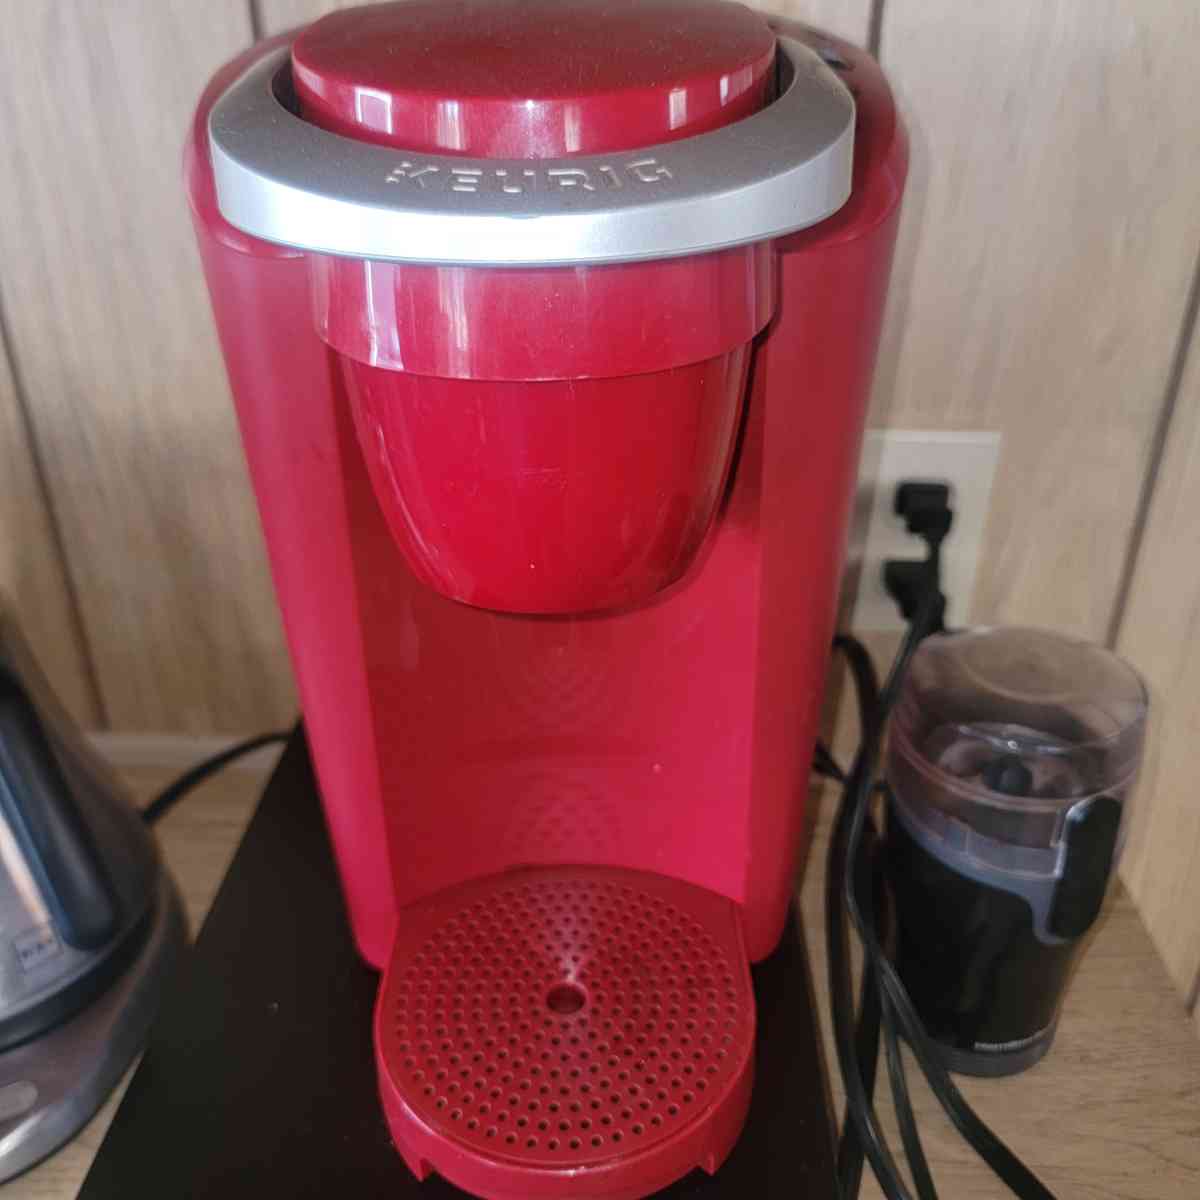 Keurig Single serve coffee maker red